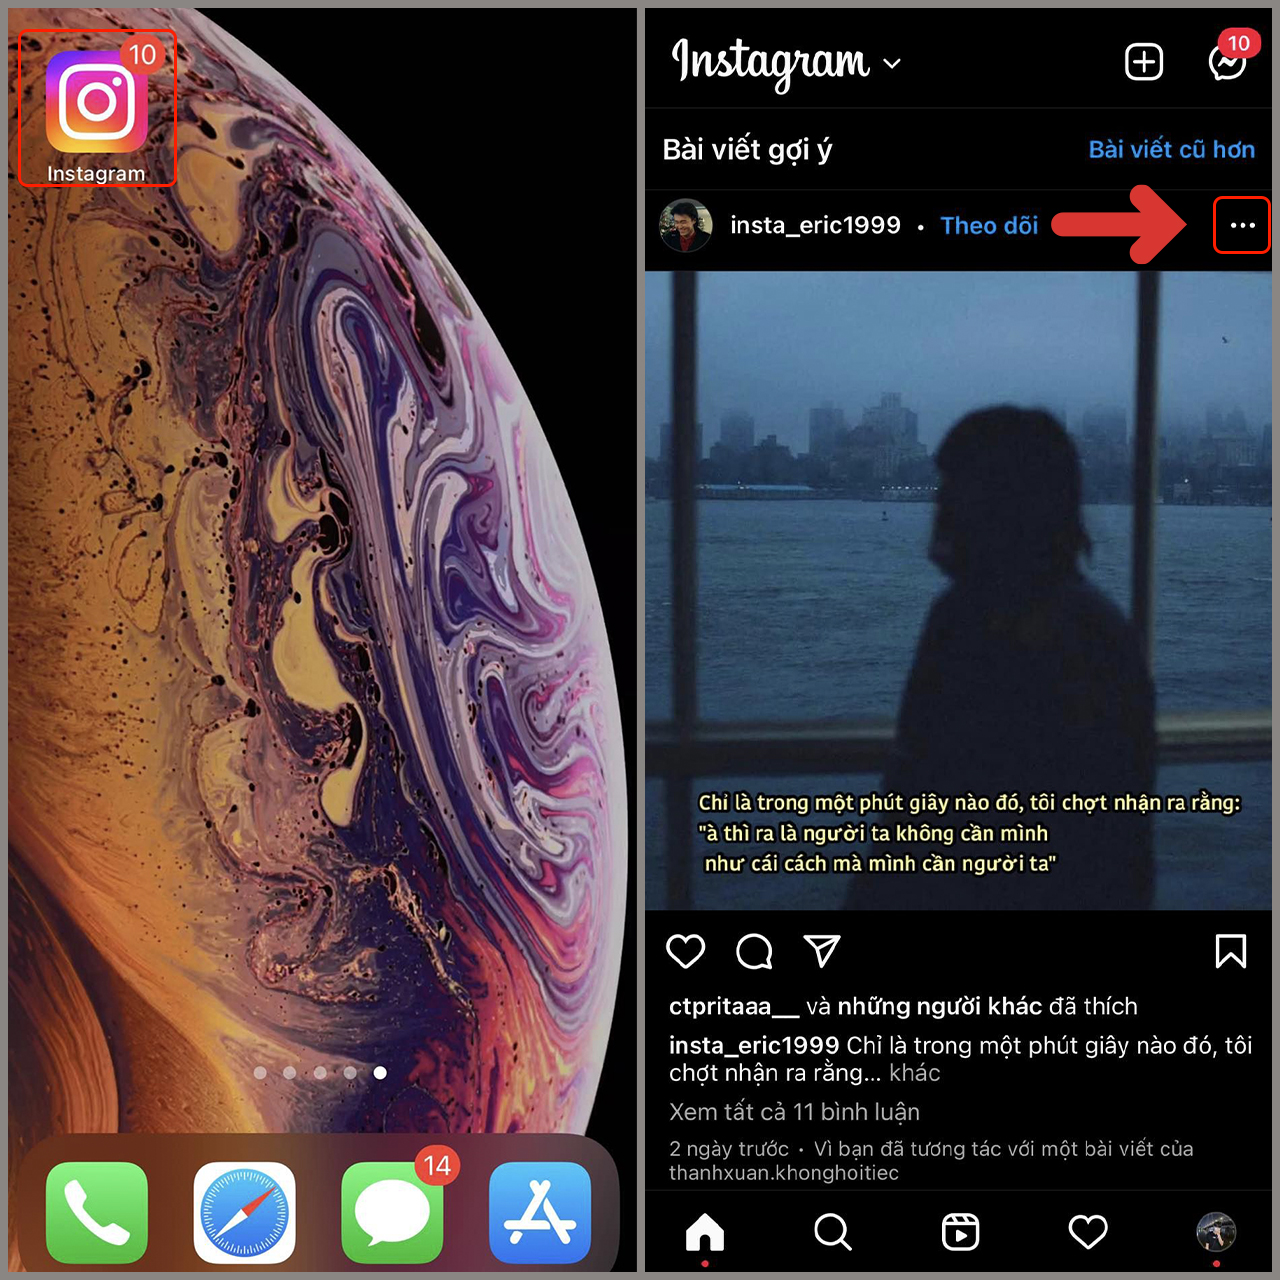 Instagram là một trong những mạng xã hội phổ biến nhất hiện nay, vì thế không có gì ngạc nhiên khi bạn muốn tải ảnh từ Instagram về iPhone. Hãy tận dụng công nghệ tiên tiến của iPhone để tải xuống những hình ảnh đẹp mắt của bạn từ Instagram.